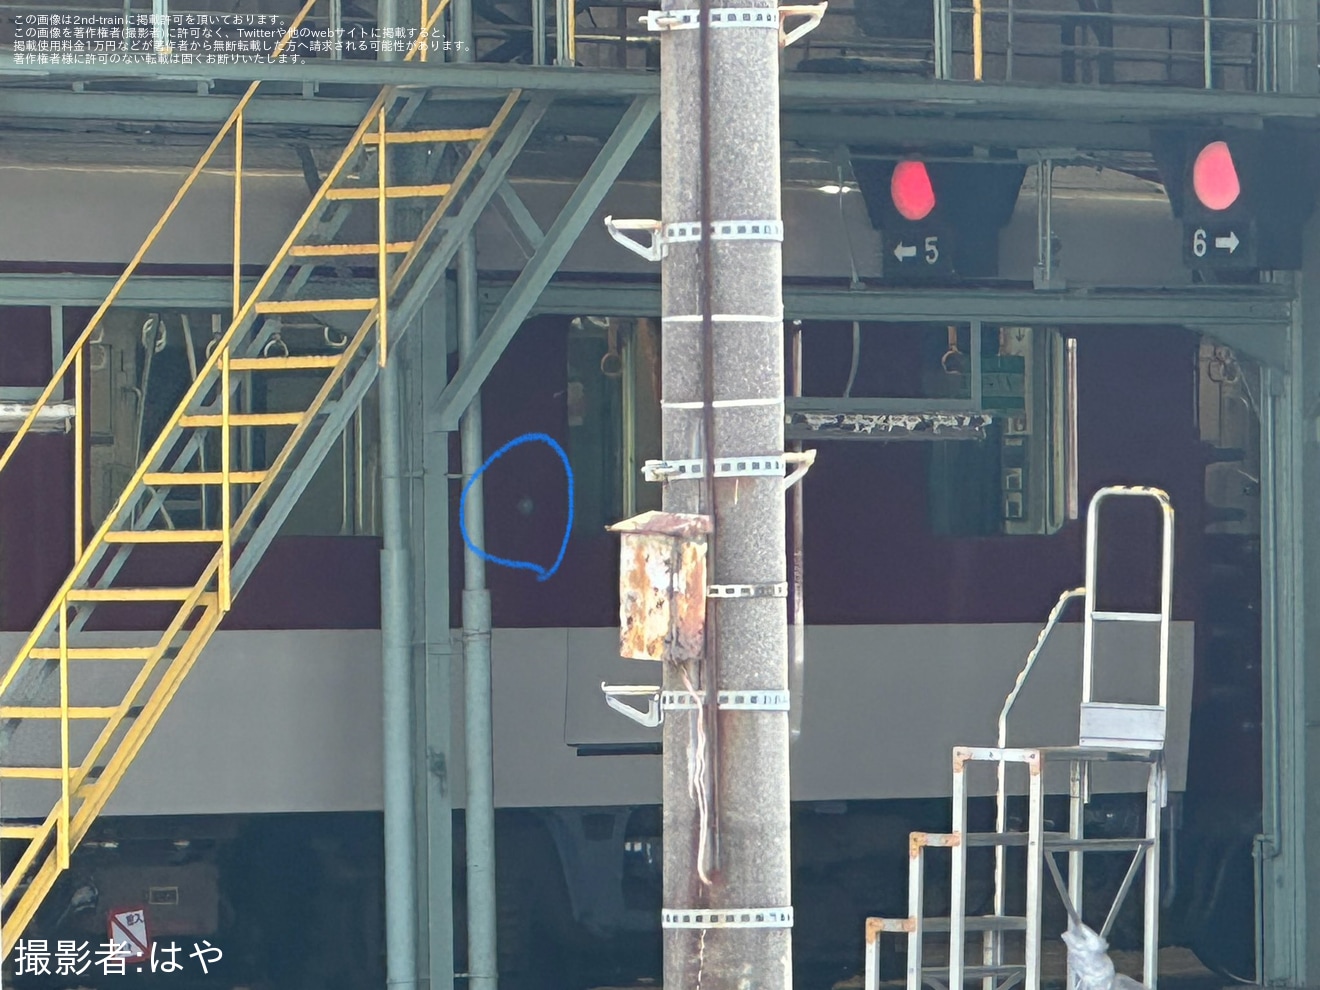 【近鉄】1233系VE37がワンマン運転対応と思われる仕様に工事中の拡大写真